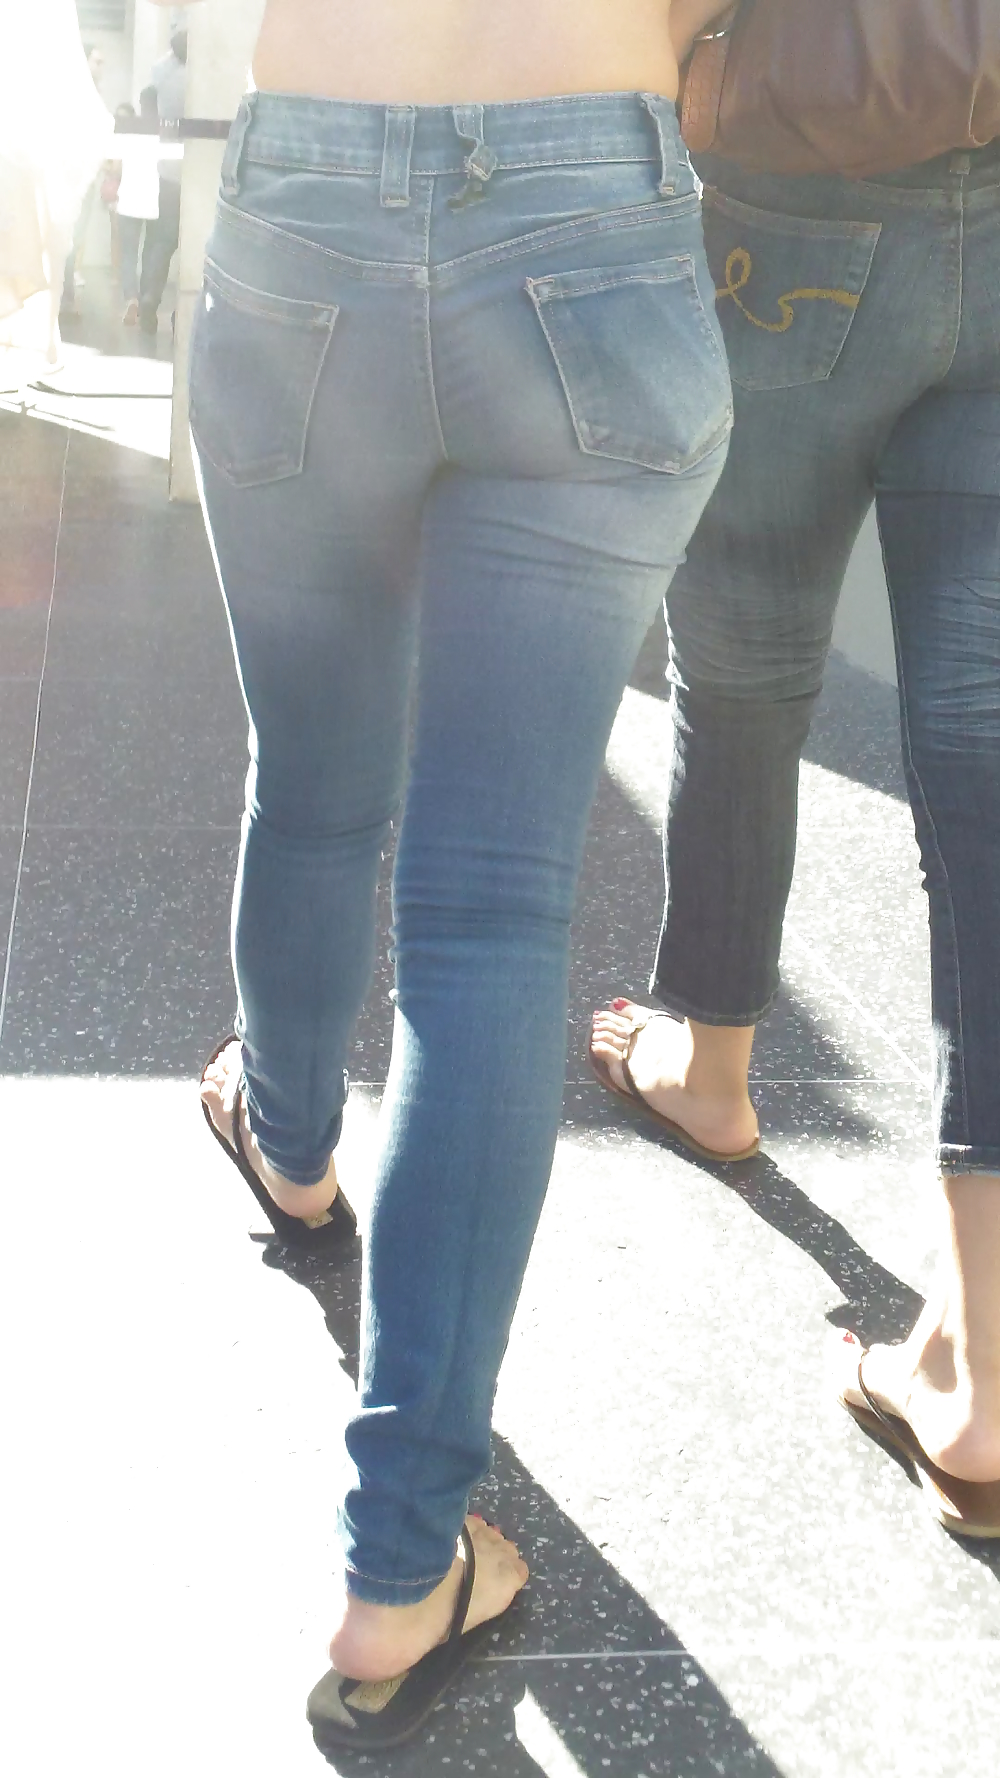 Beautiful cute tight teen ass & butt in blue jeans #21921832